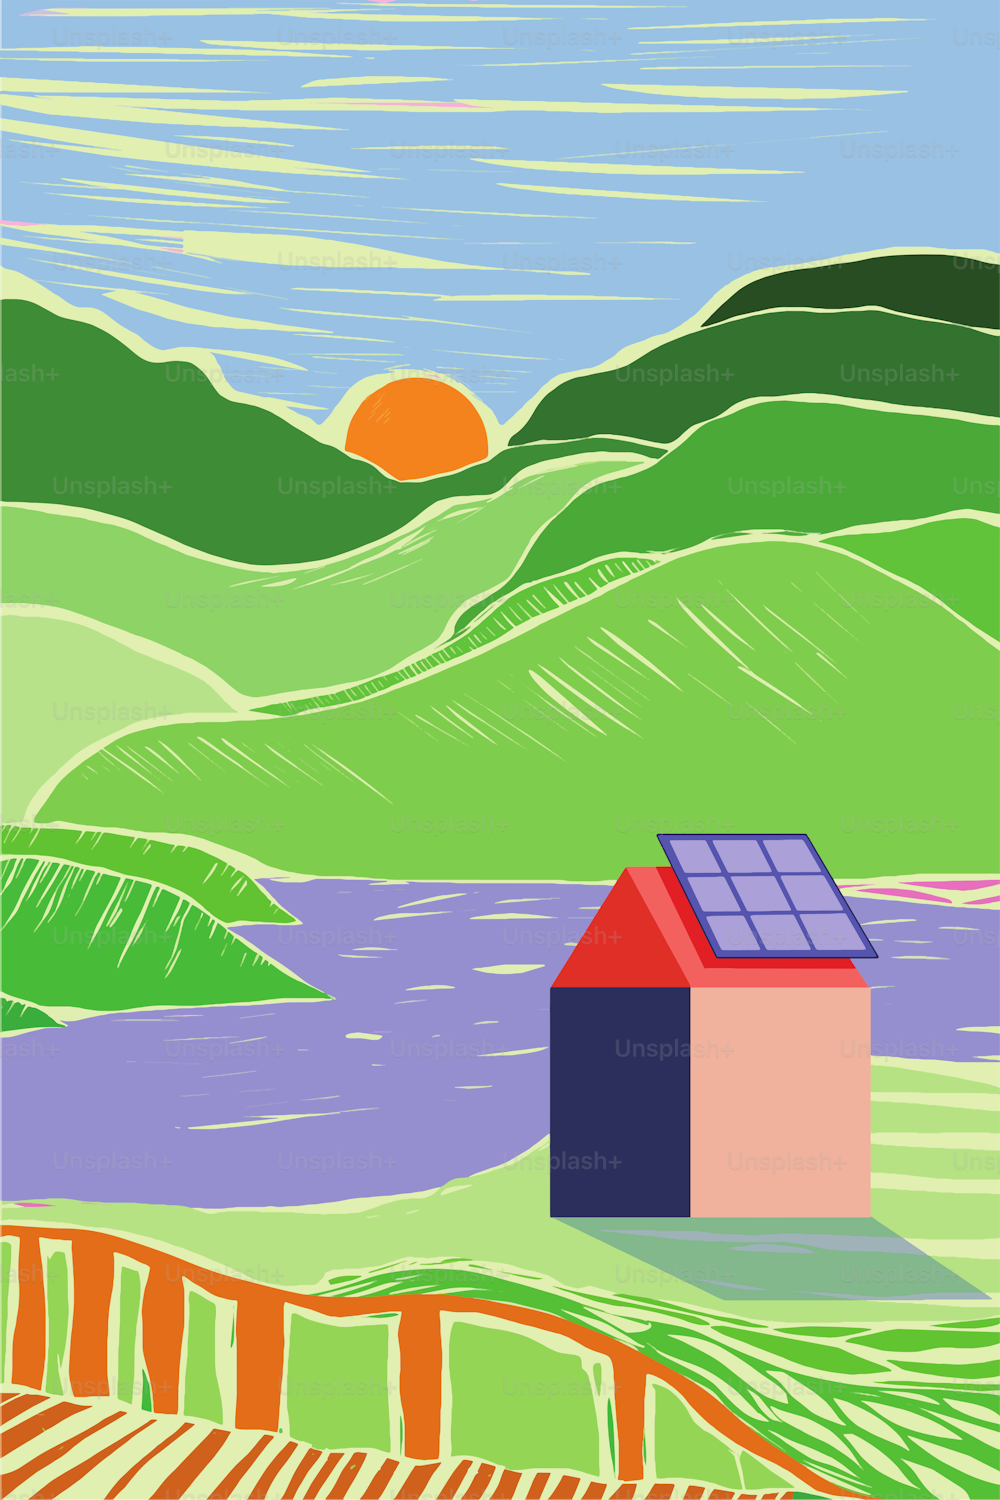 Uma pequena aldeia que se torna verde e sustentável através da instalação de painéis solares nos telhados. Estilo de impressão